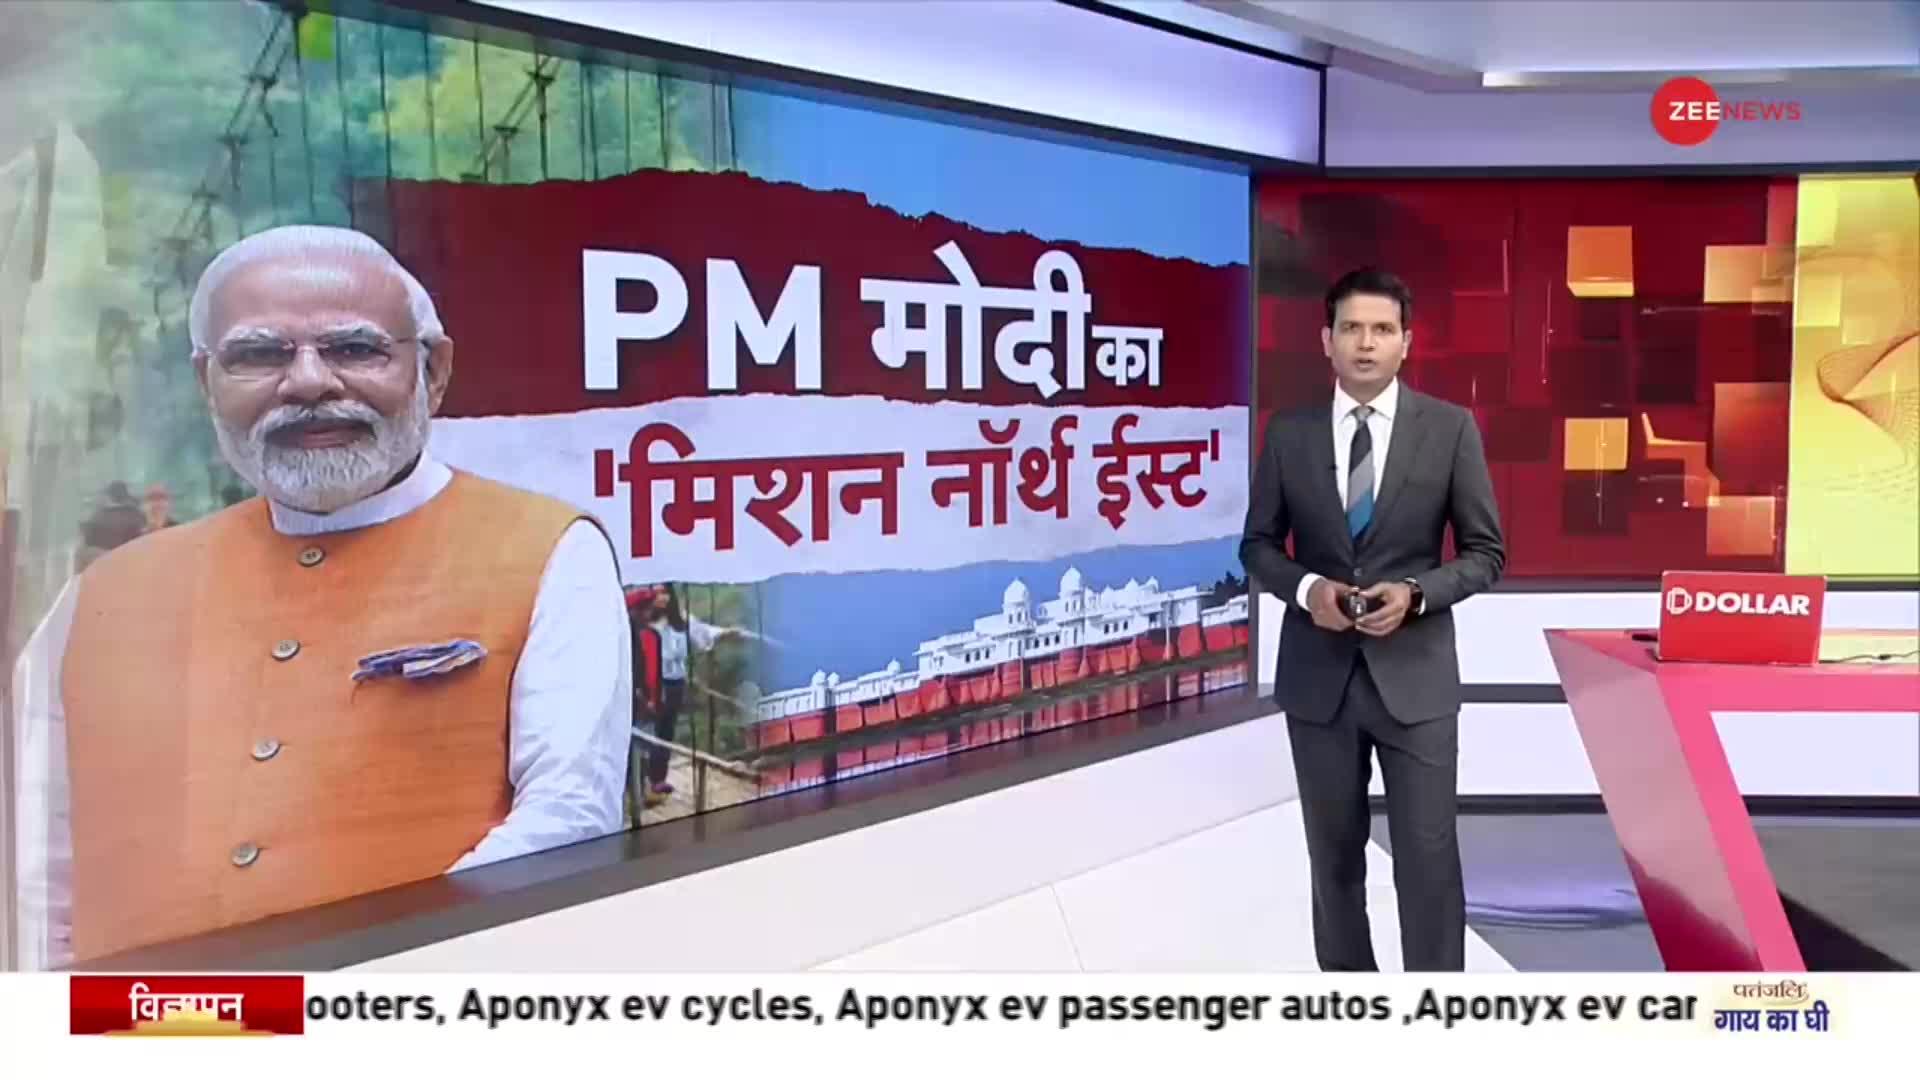 PM Modi Meghalaya visit: मेघायल में बोले PM मोदी, 'पूर्वोत्तर में विकास के कॉरिडोर बनाए'